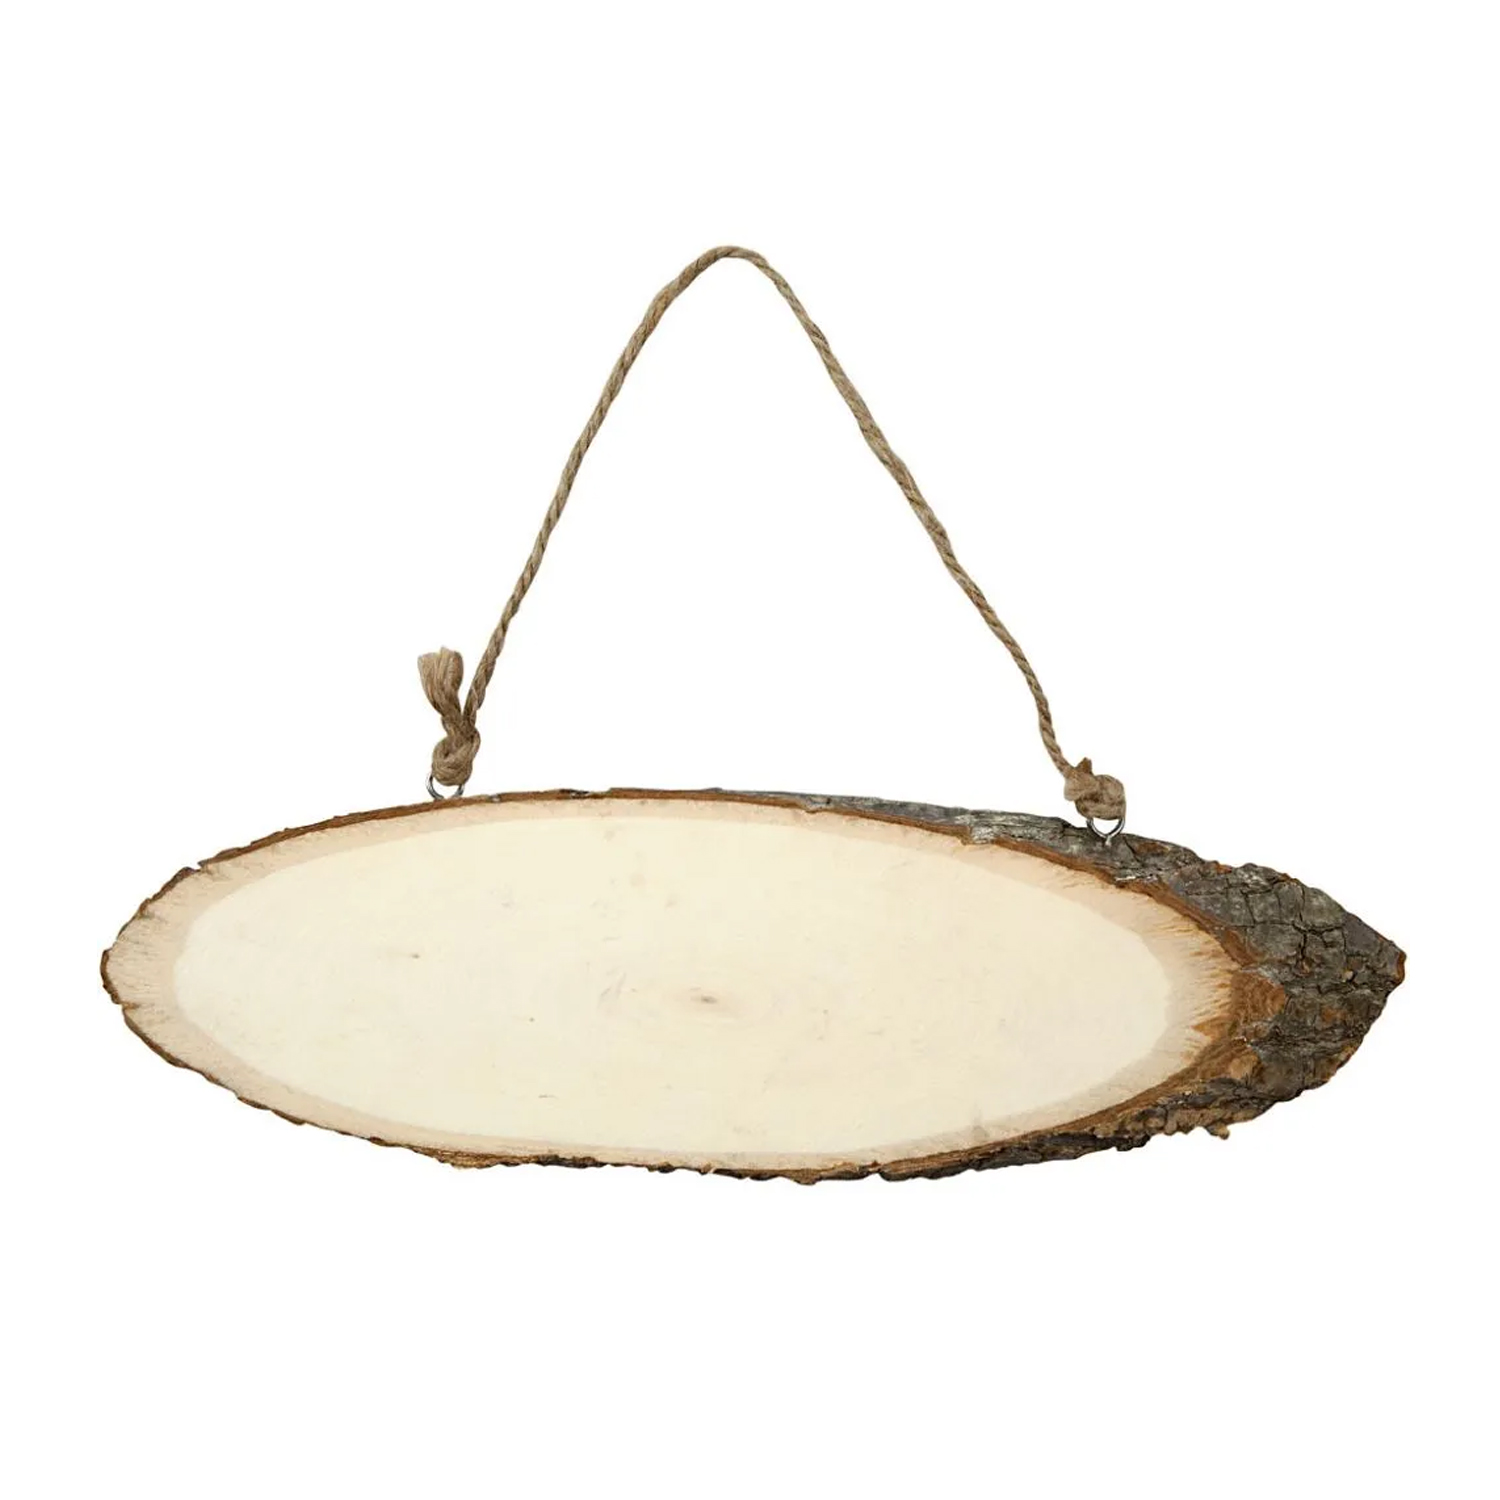 NEU Trschild Oval aus Naturholz mit Rinde, Hhe: 6-10 cm und Breite: 23-28 cm